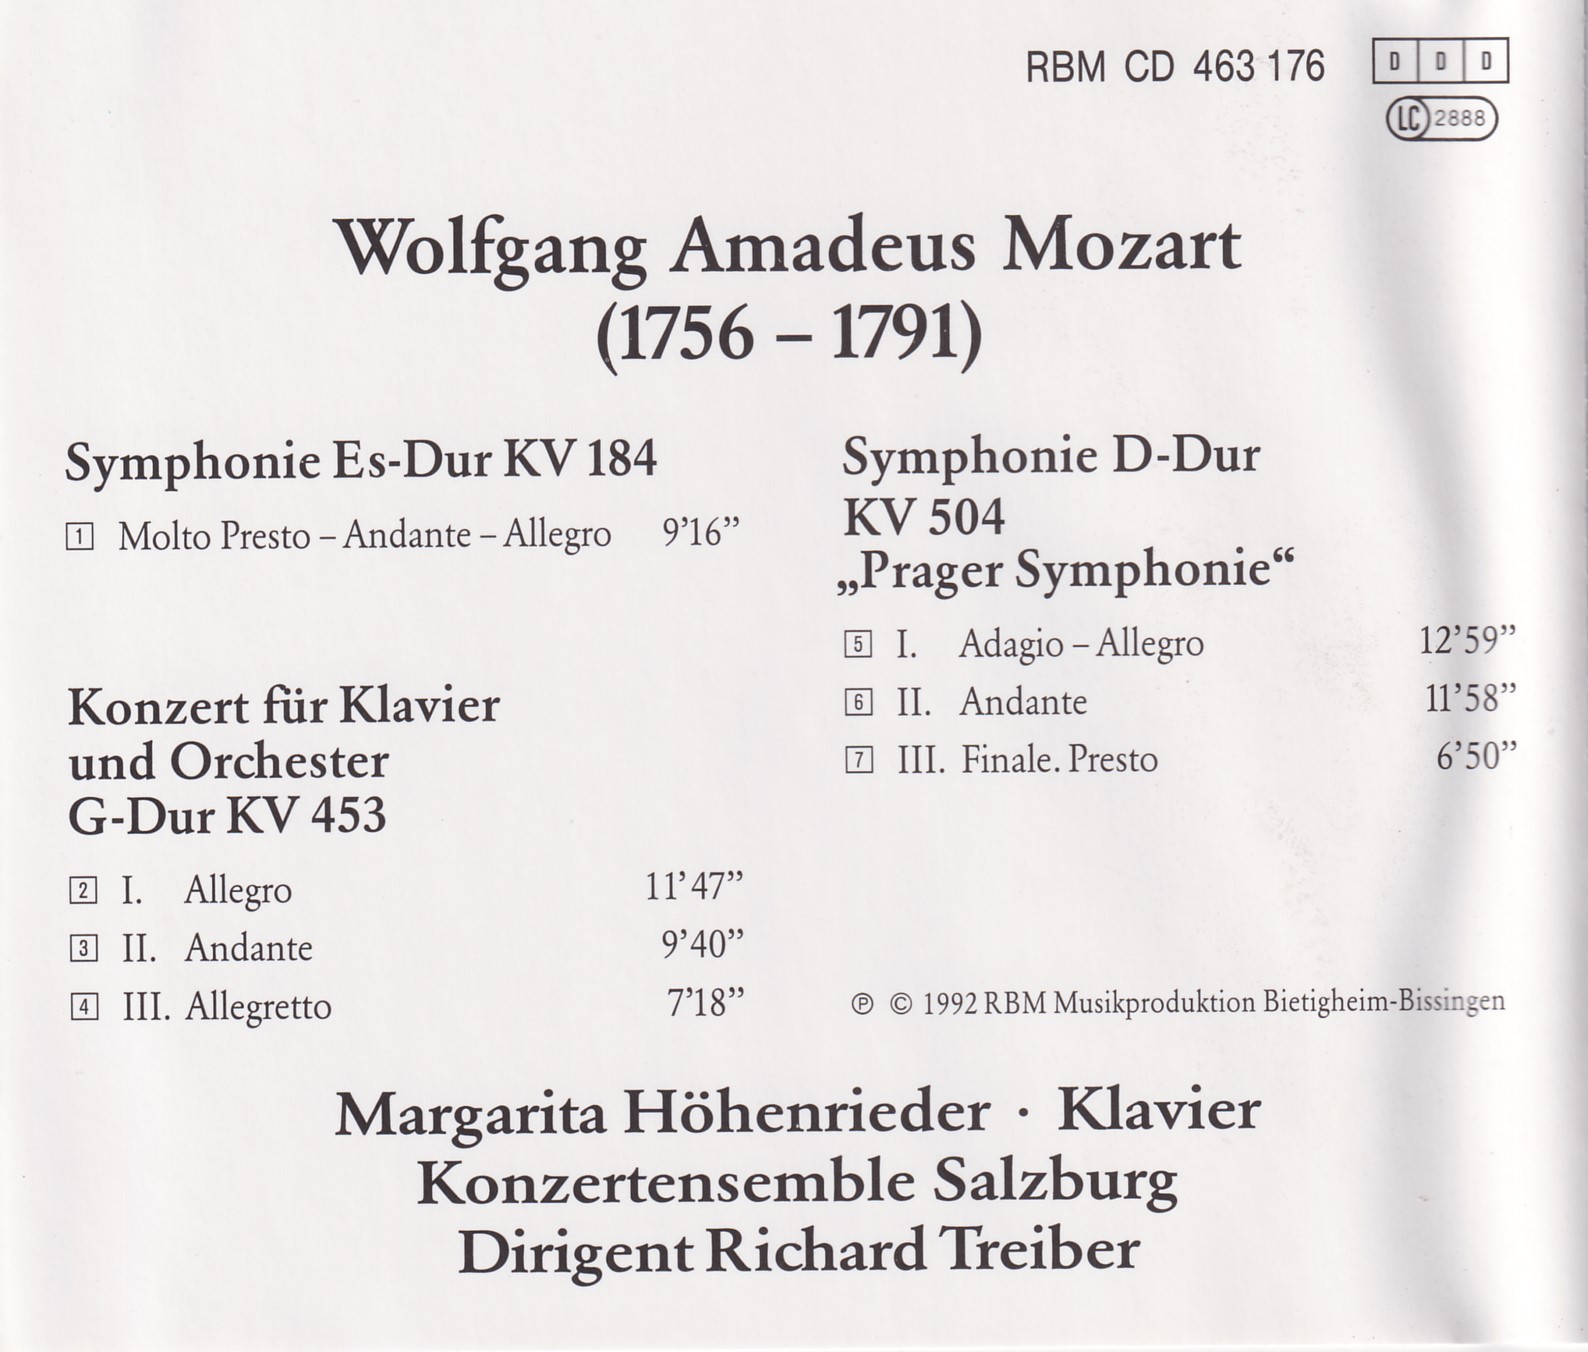 Schwetzinger Mozartfestival - Konzertensemble Salzburg